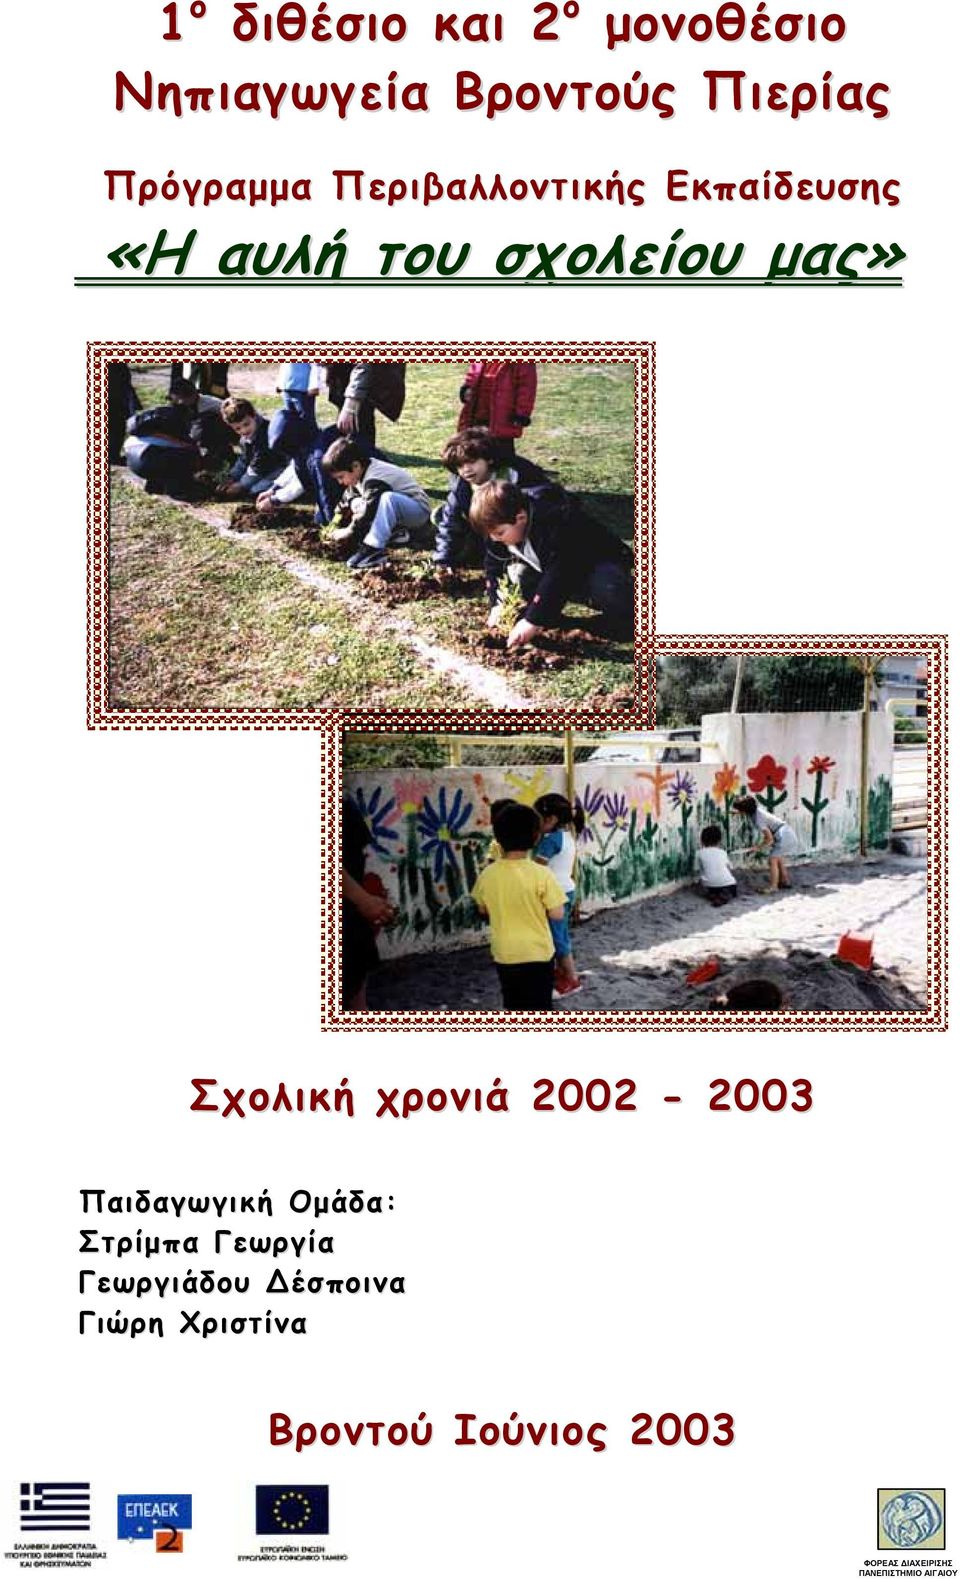 2002-2003 Παιδαγωγική Ομάδα: Στρίμπα Γεωργία Γεωργιάδου έσποινα Γιώρη